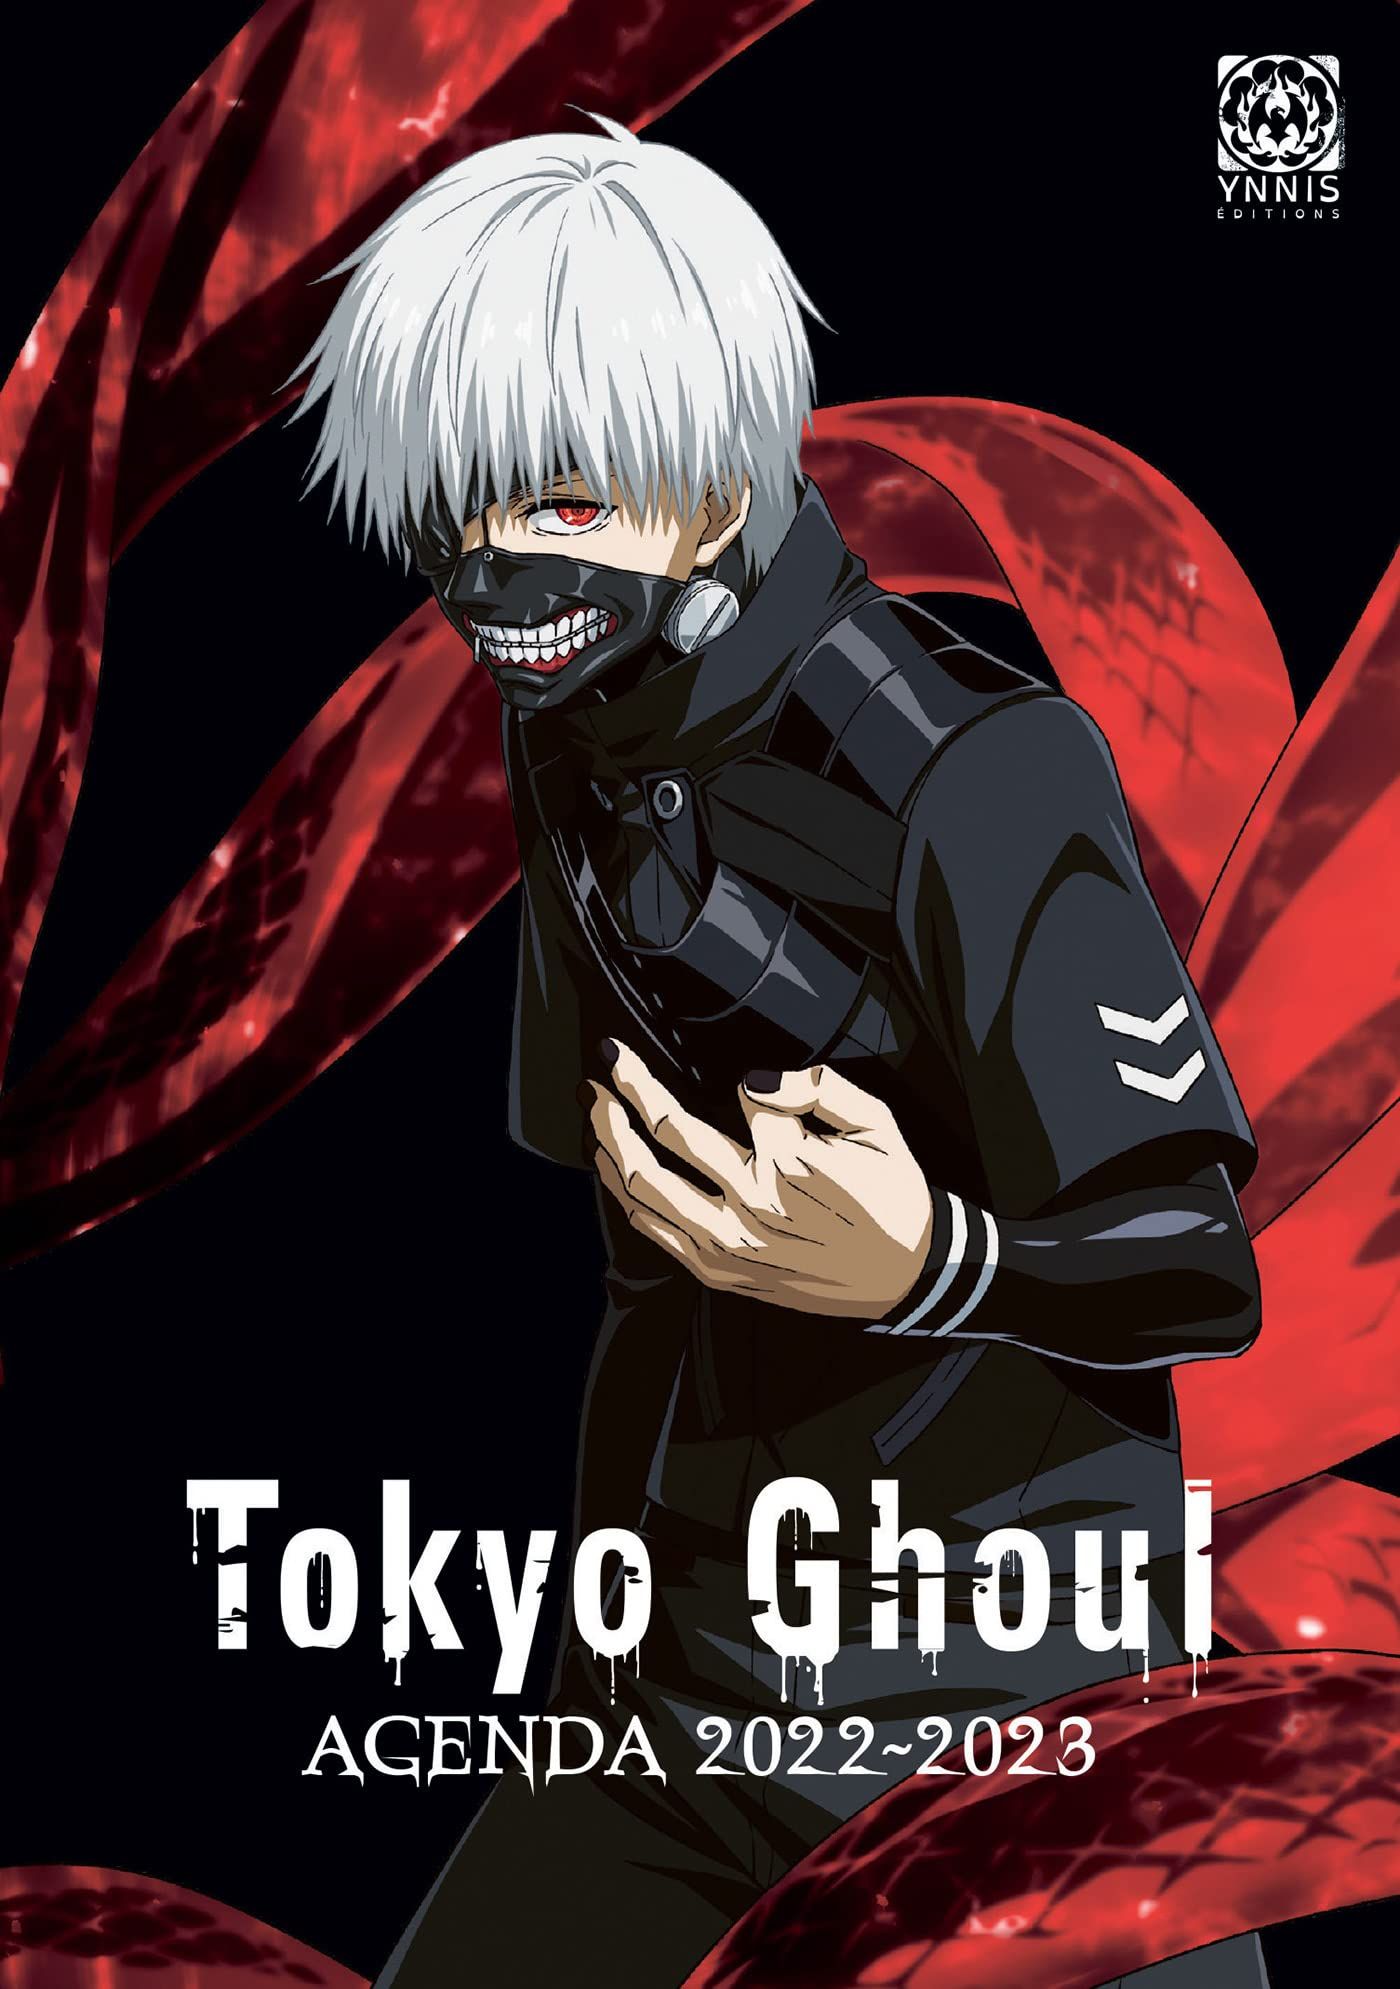 Agenda 2022-2023 Tokyo Ghoul